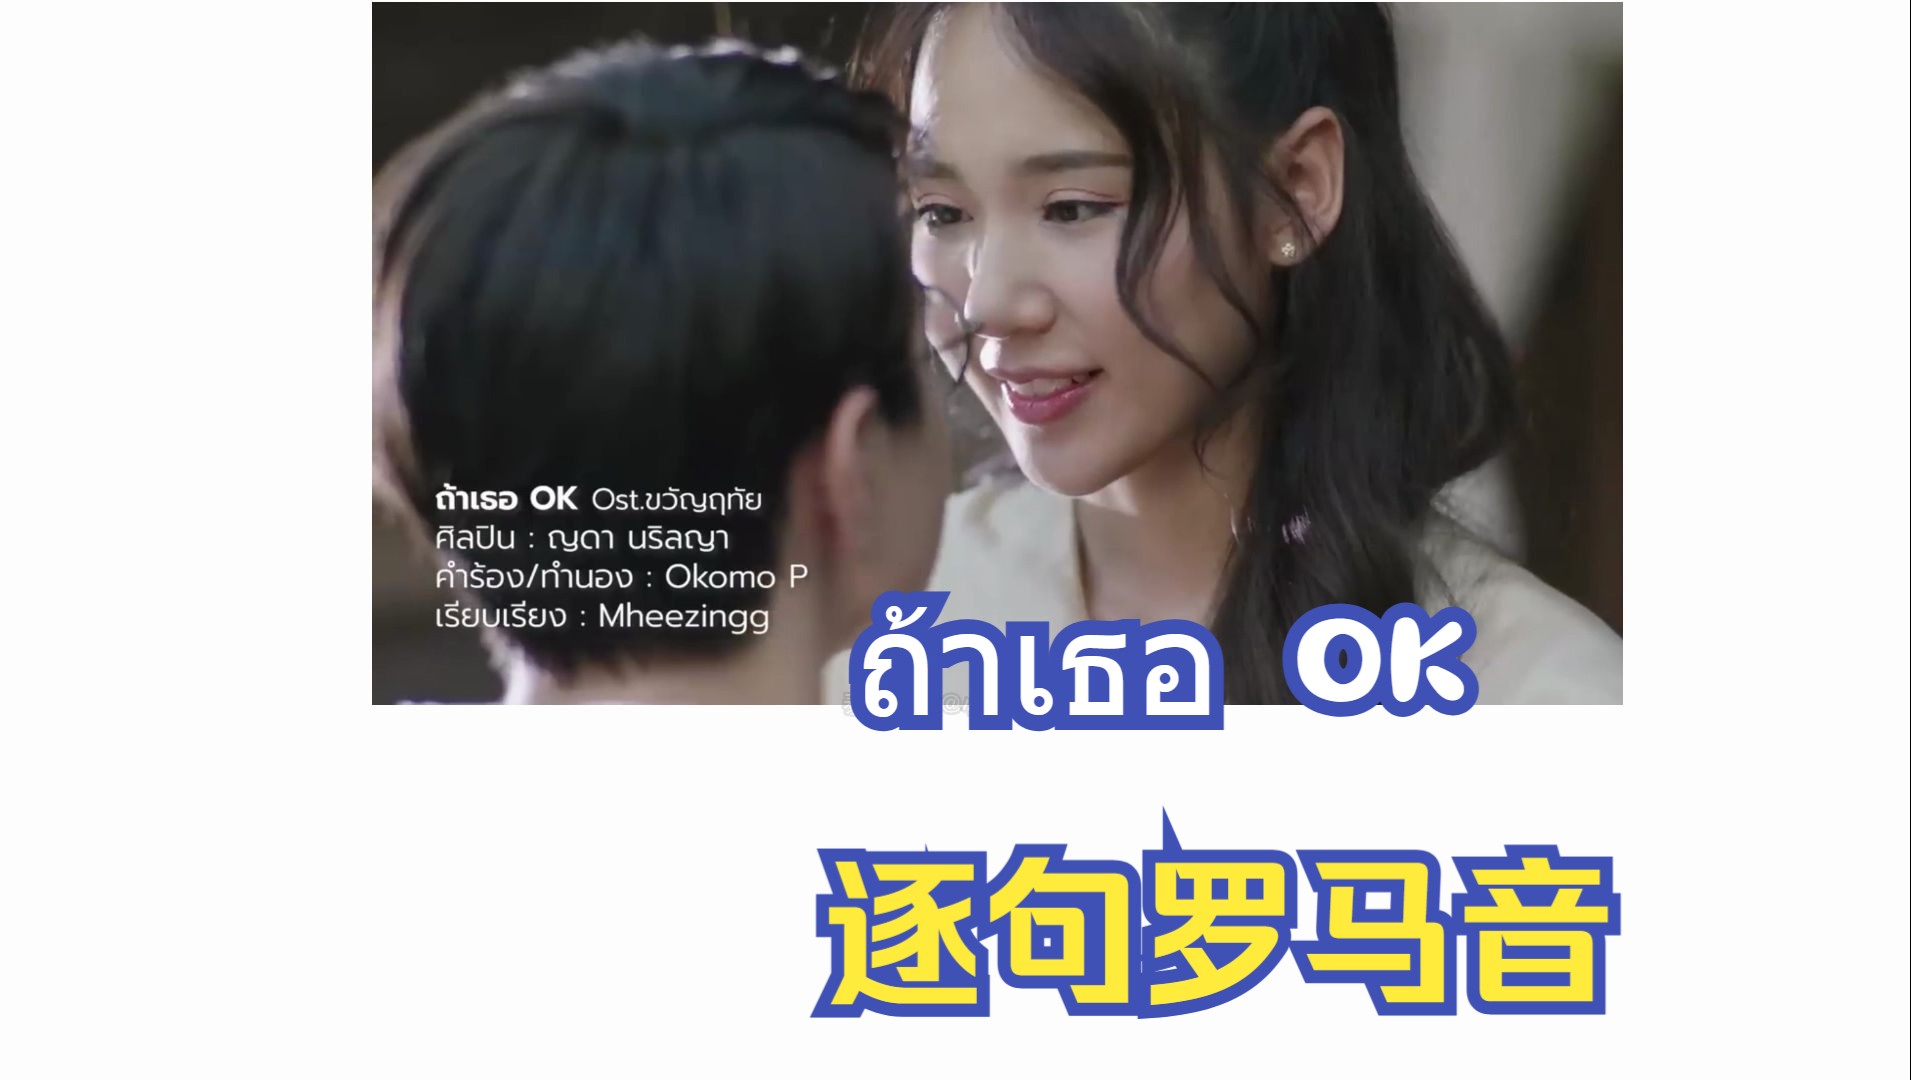 【泰语歌音译】心禧相医OST ถ้าเธอ OK -如果你OK